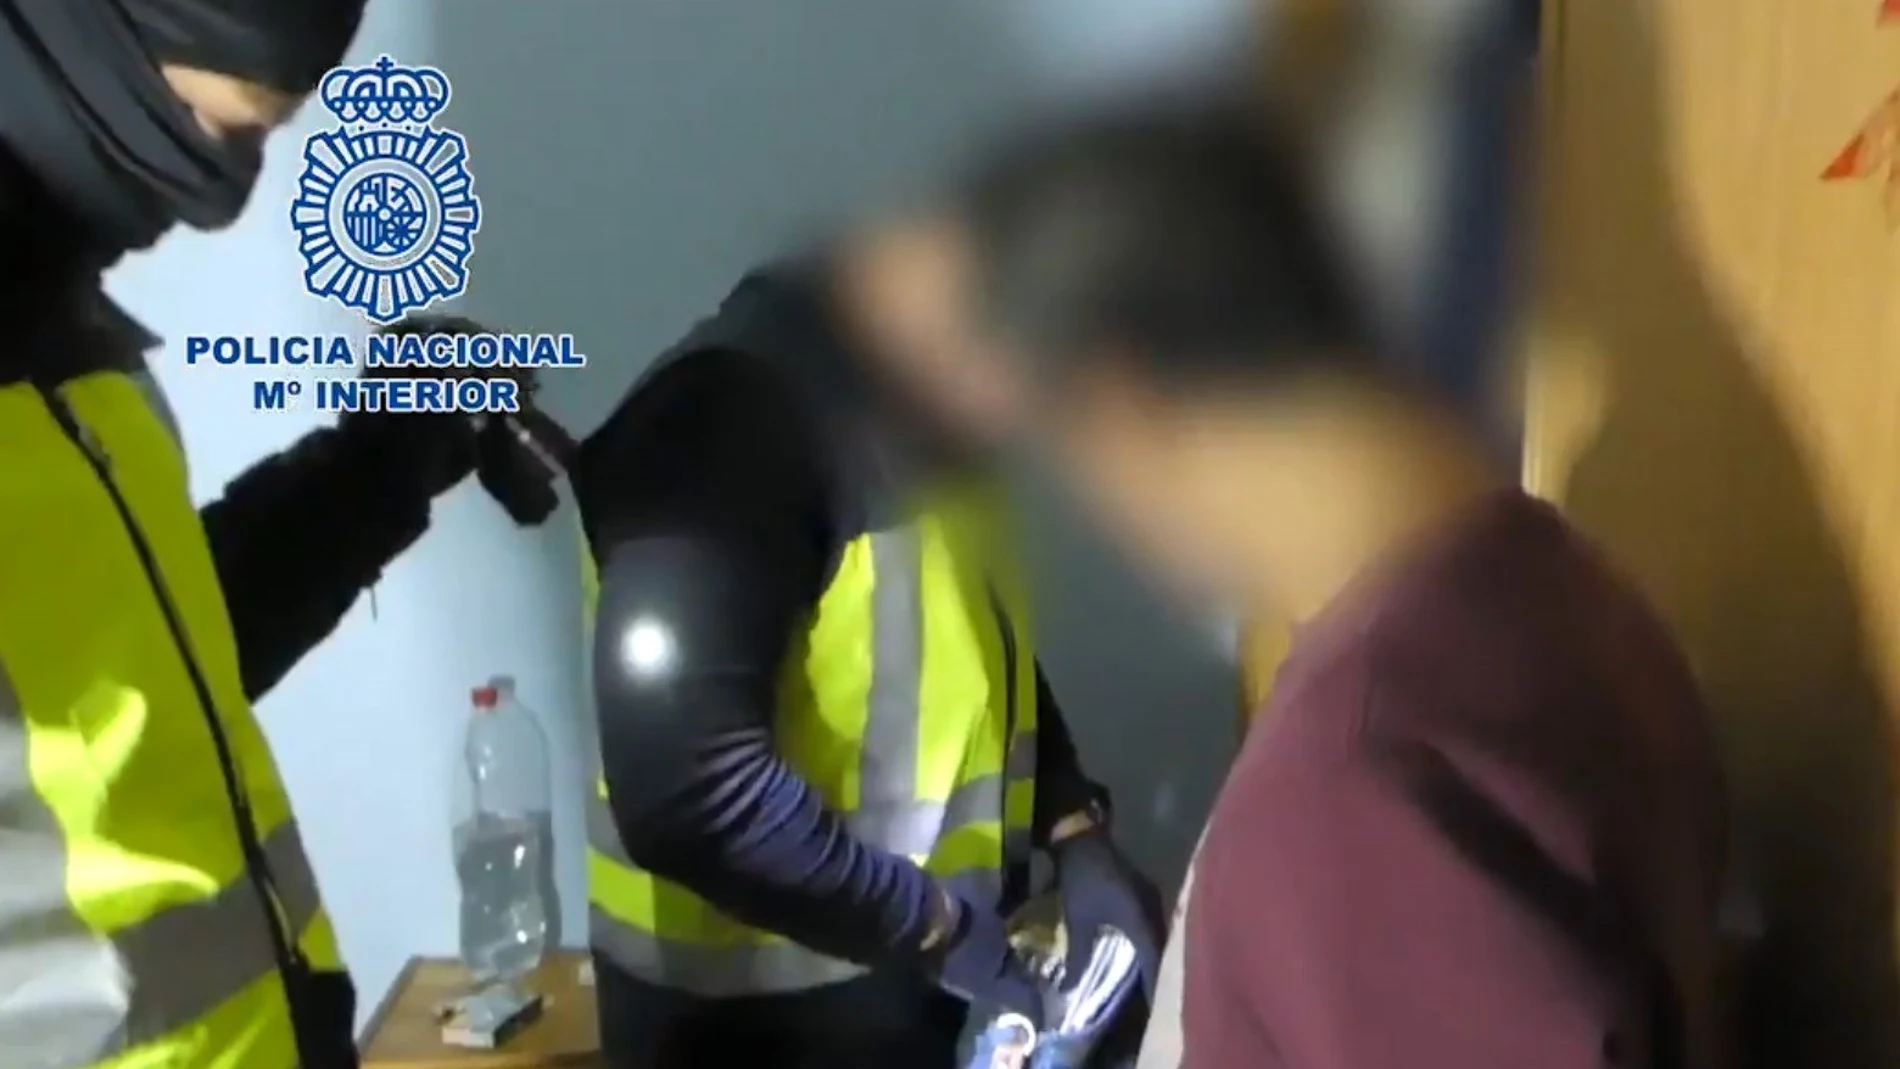 GRAF4935. MADRID, 28/12/2019.- Fotografía facilitada por la Policía Nacional que muestra a uno de los detenidos mientras miembros de la policía registran ciertos documentos durante una operación contra siete presuntos atracadores que en menos de dos meses habrían cometido catorce robos en establecimientos comerciales de Madrid y Guadalajara a cuyos empleados amenazaban con hachas, armas blancas o armas de fuego. EFE/ - **SÓLO USO EDITORIAL/ NO VENTAS**